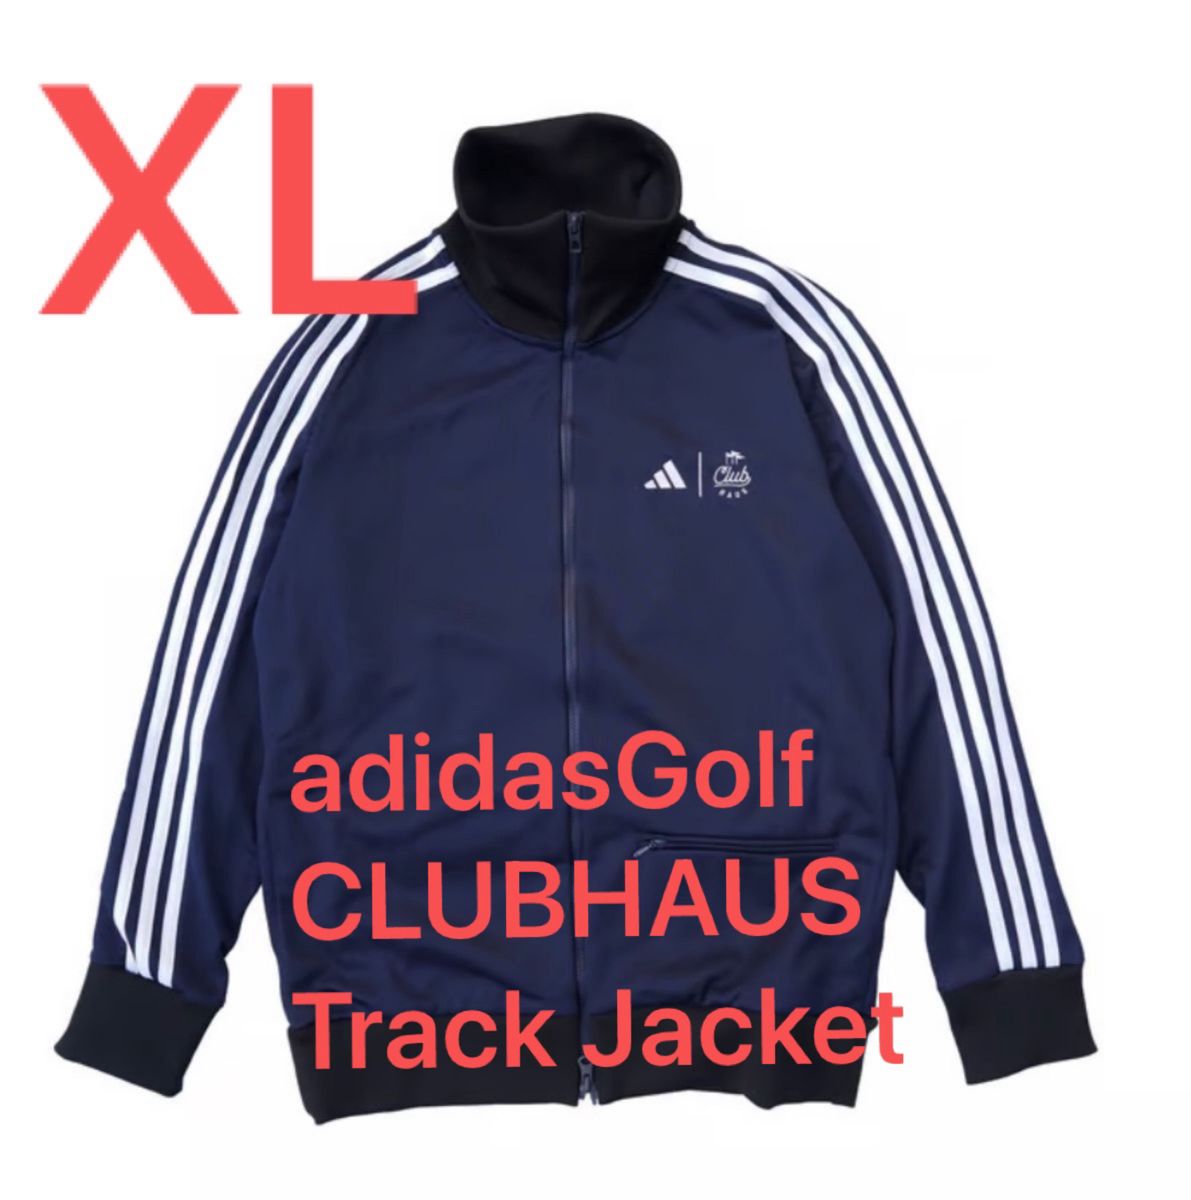 AdidasGolf X CLUBHAUS Track Jacket サイズXL